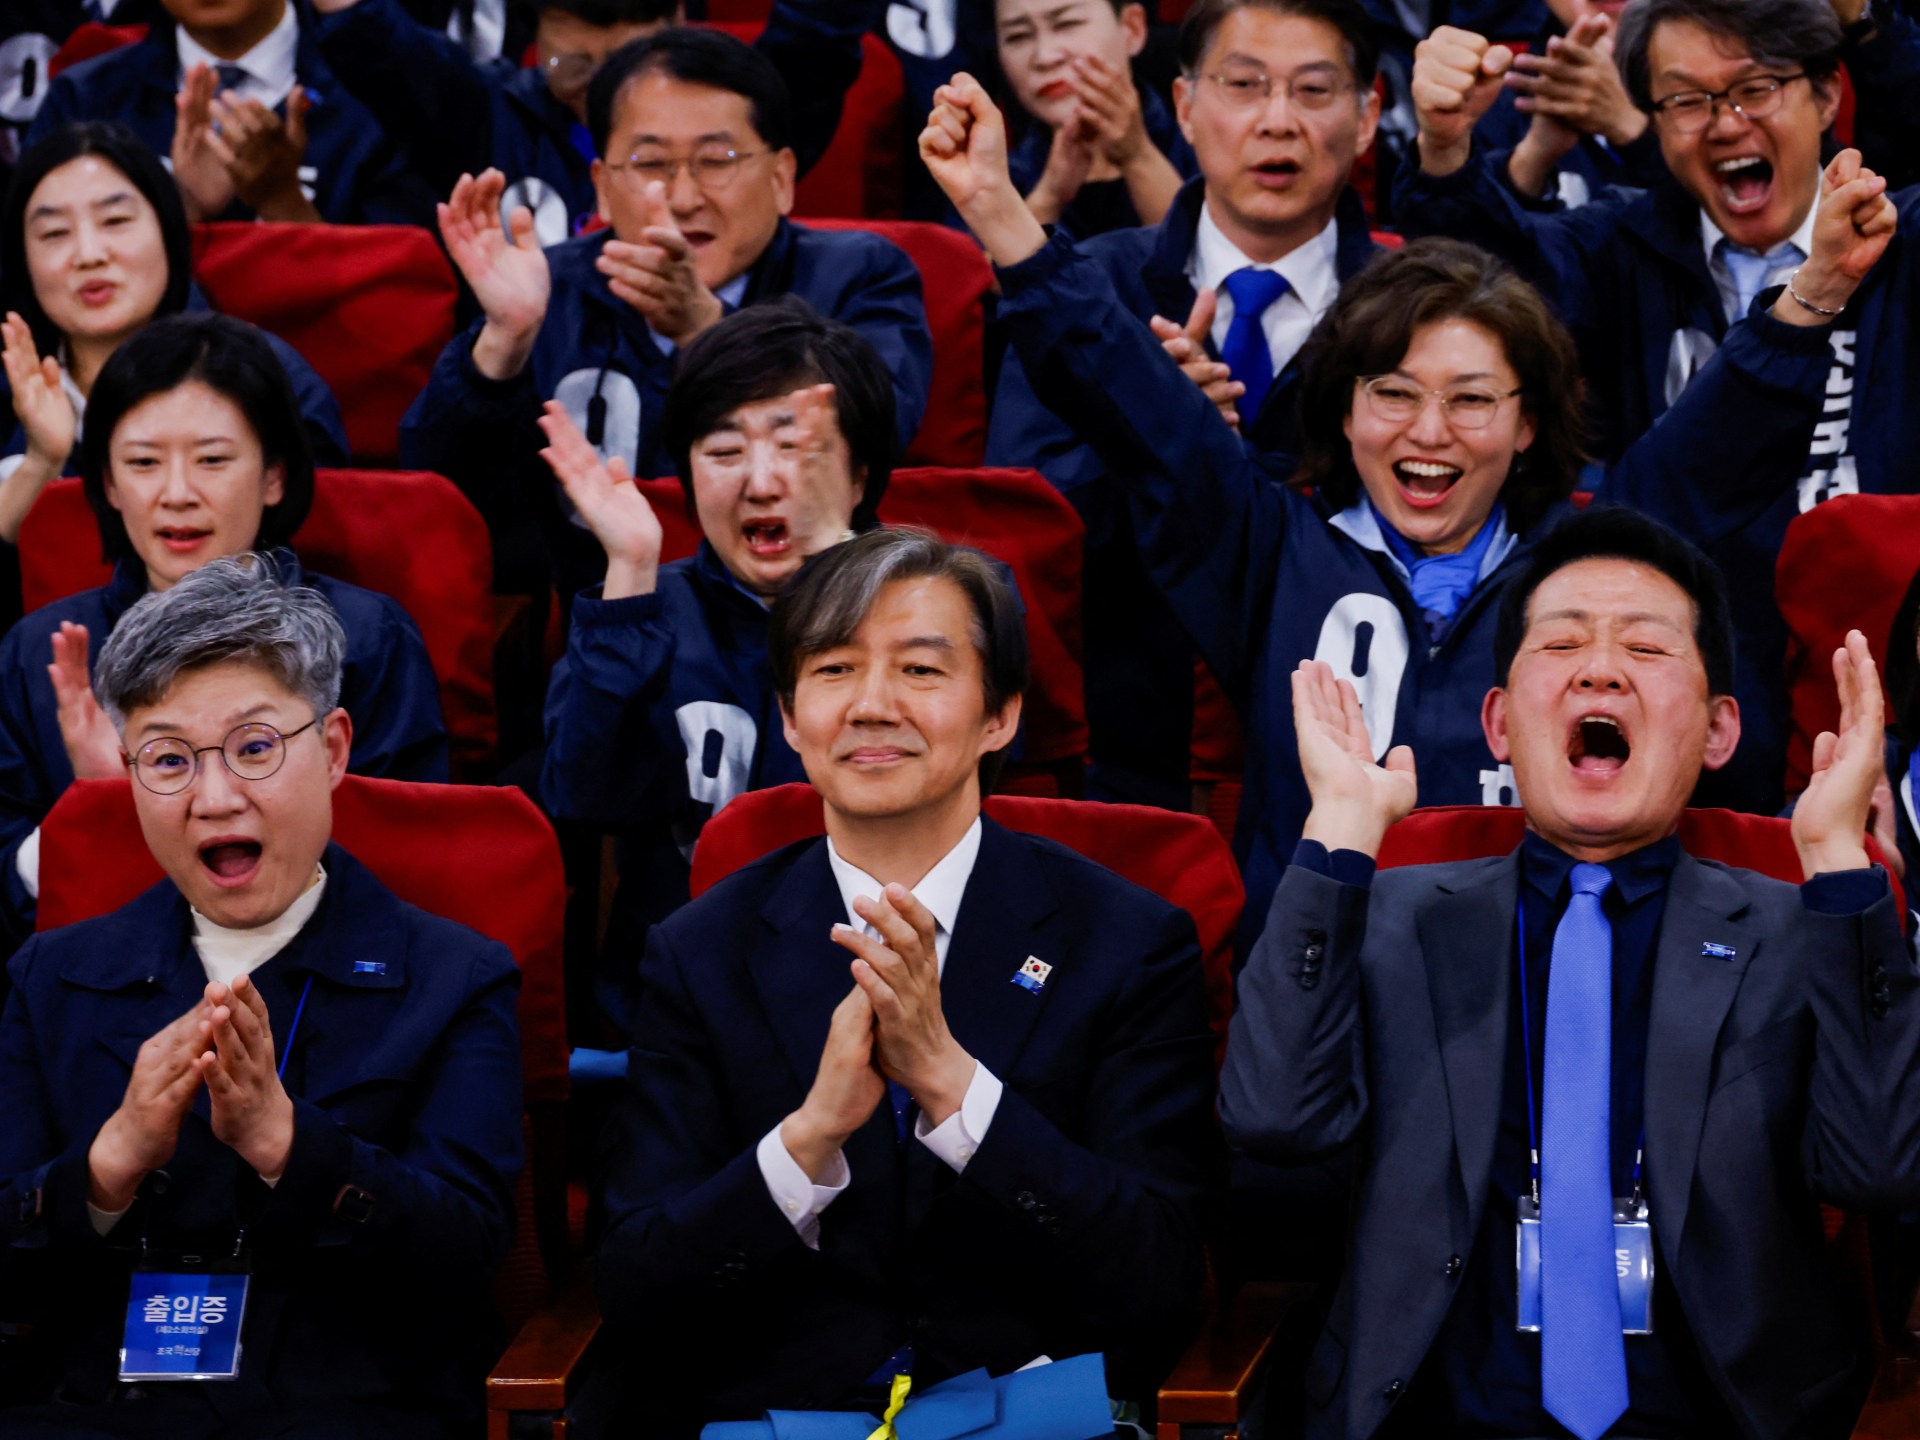 Wybory w Korei Południowej: Sondaże pokazują, że partie opozycji zyskują większość |  Wiadomości wyborcze